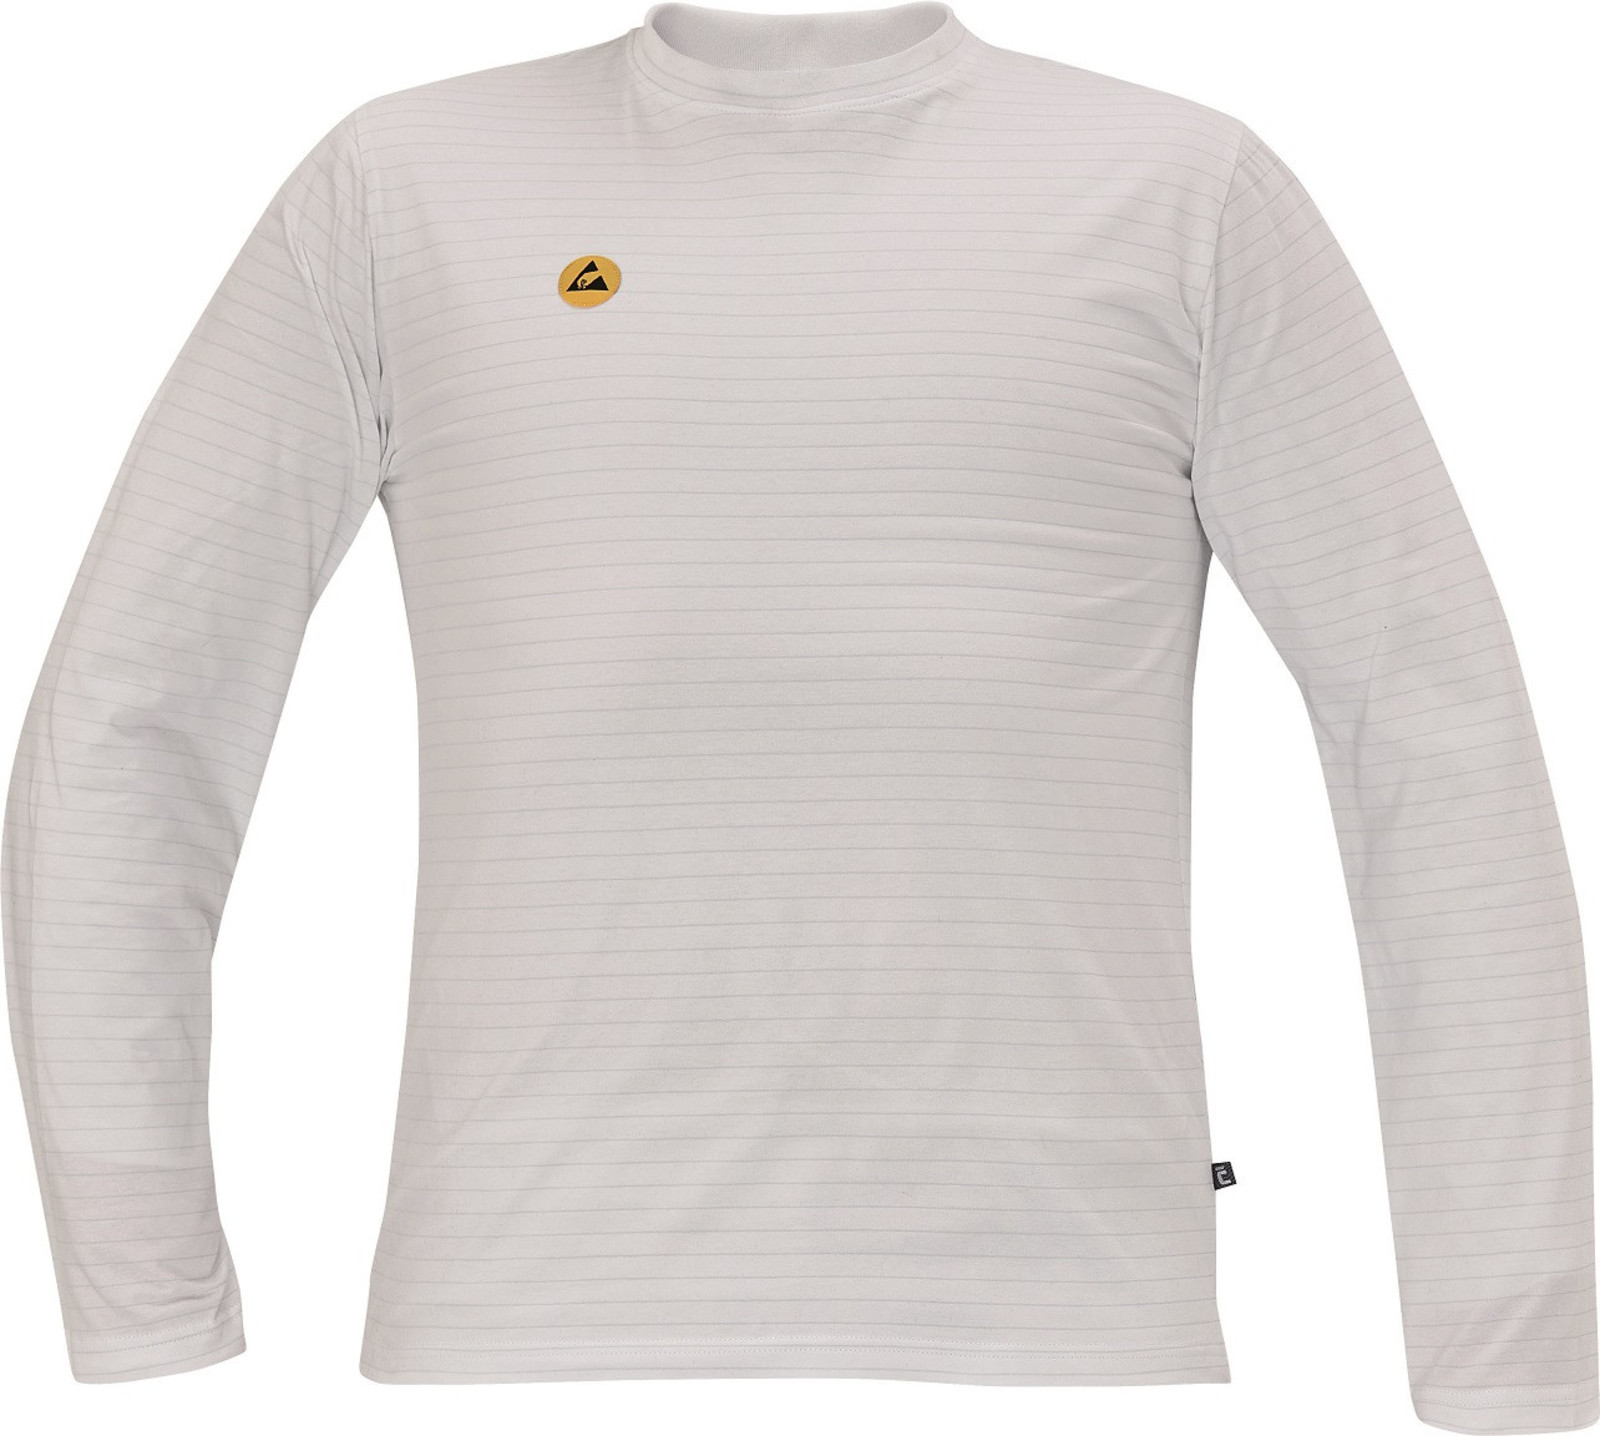 Antistatické ESD tričko Cerva Noyo s dlhými rukávmi - veľkosť: L, farba: biela